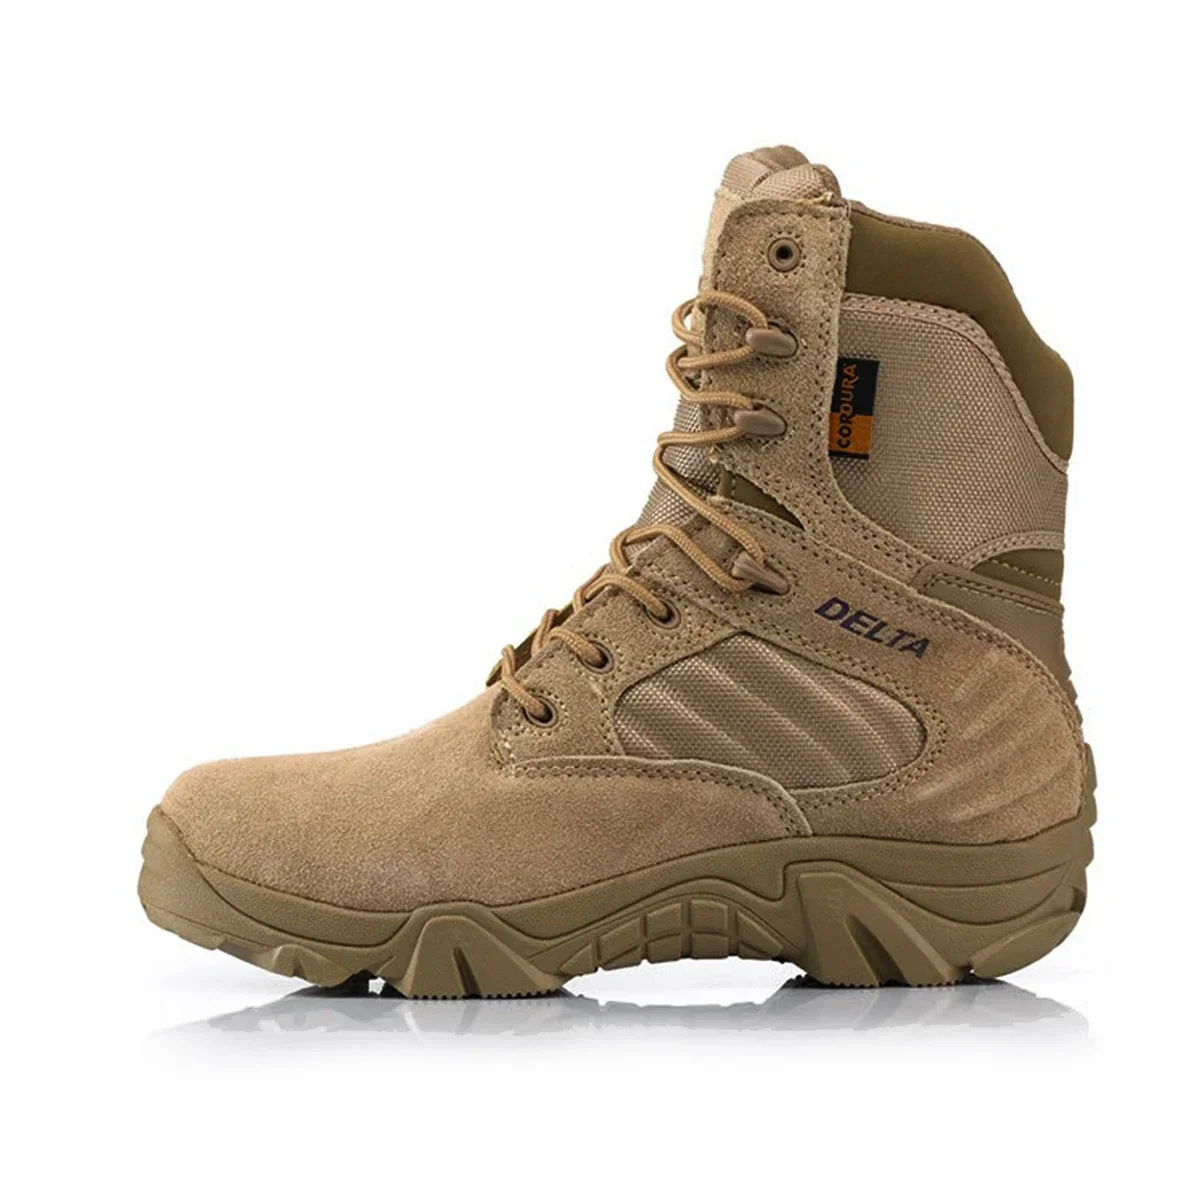 Inverno autunno Army Men Military Delta Special Force Tactical Desert Combat scarpe da lavoro alla caviglia stivali da neve in pelle da uomo